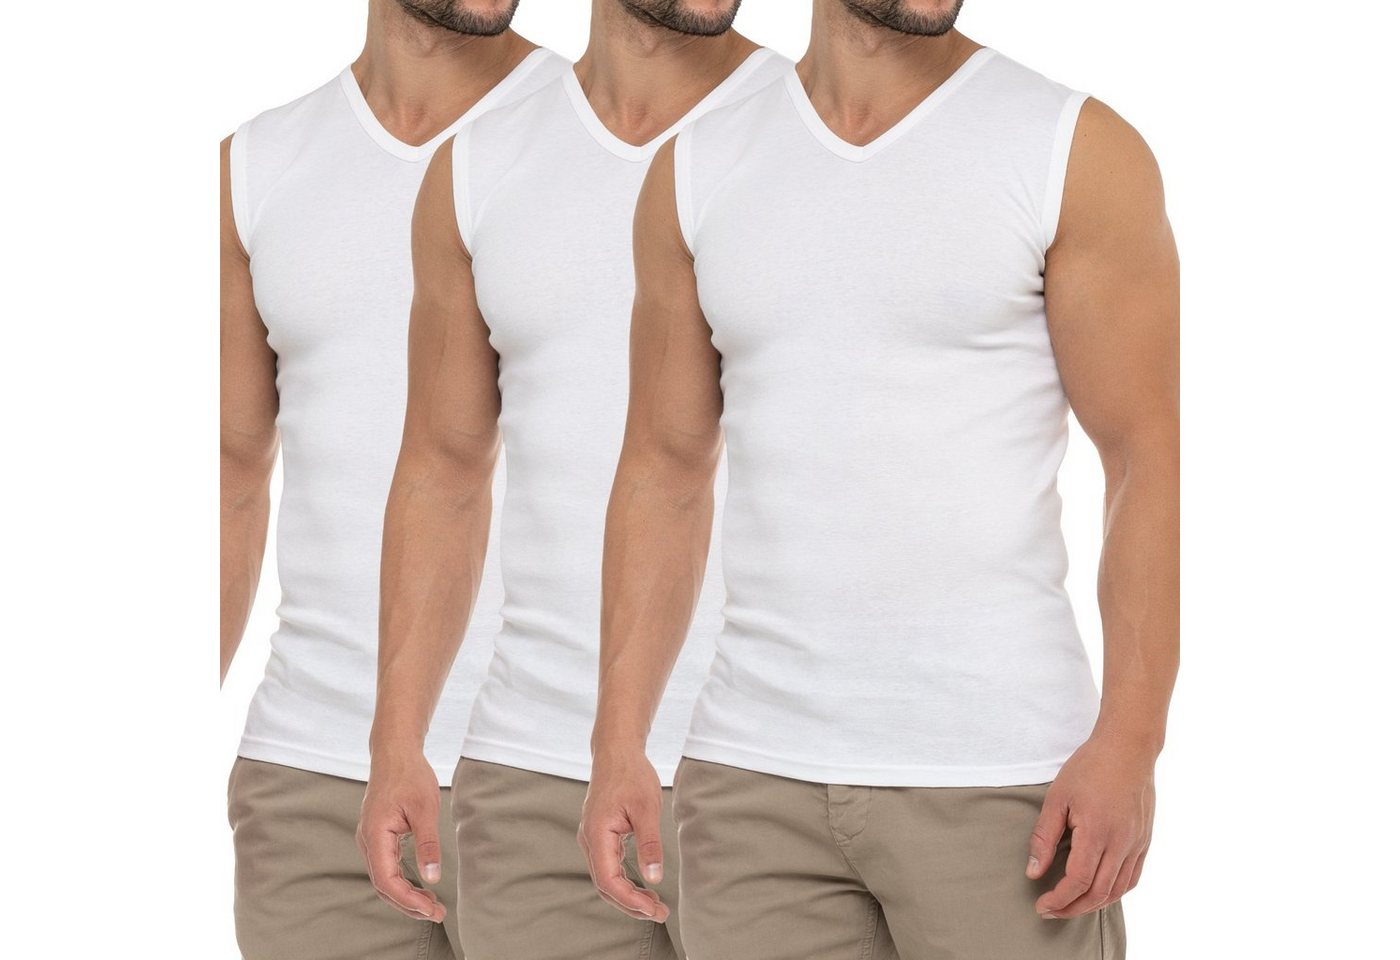 celodoro Unterhemd Herren Business Muskelshirt V-Neck (3er Pack) Muscle Shirt von celodoro